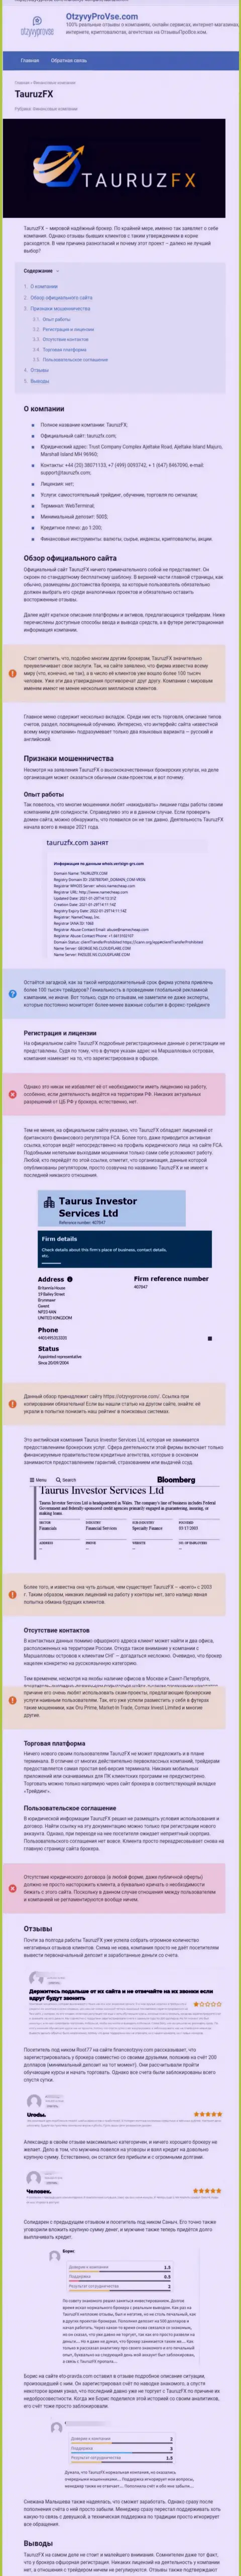 Taurus Investor Services Ltd денежные вложения не выводит, так что пытаться не нужно (обзор проделок)